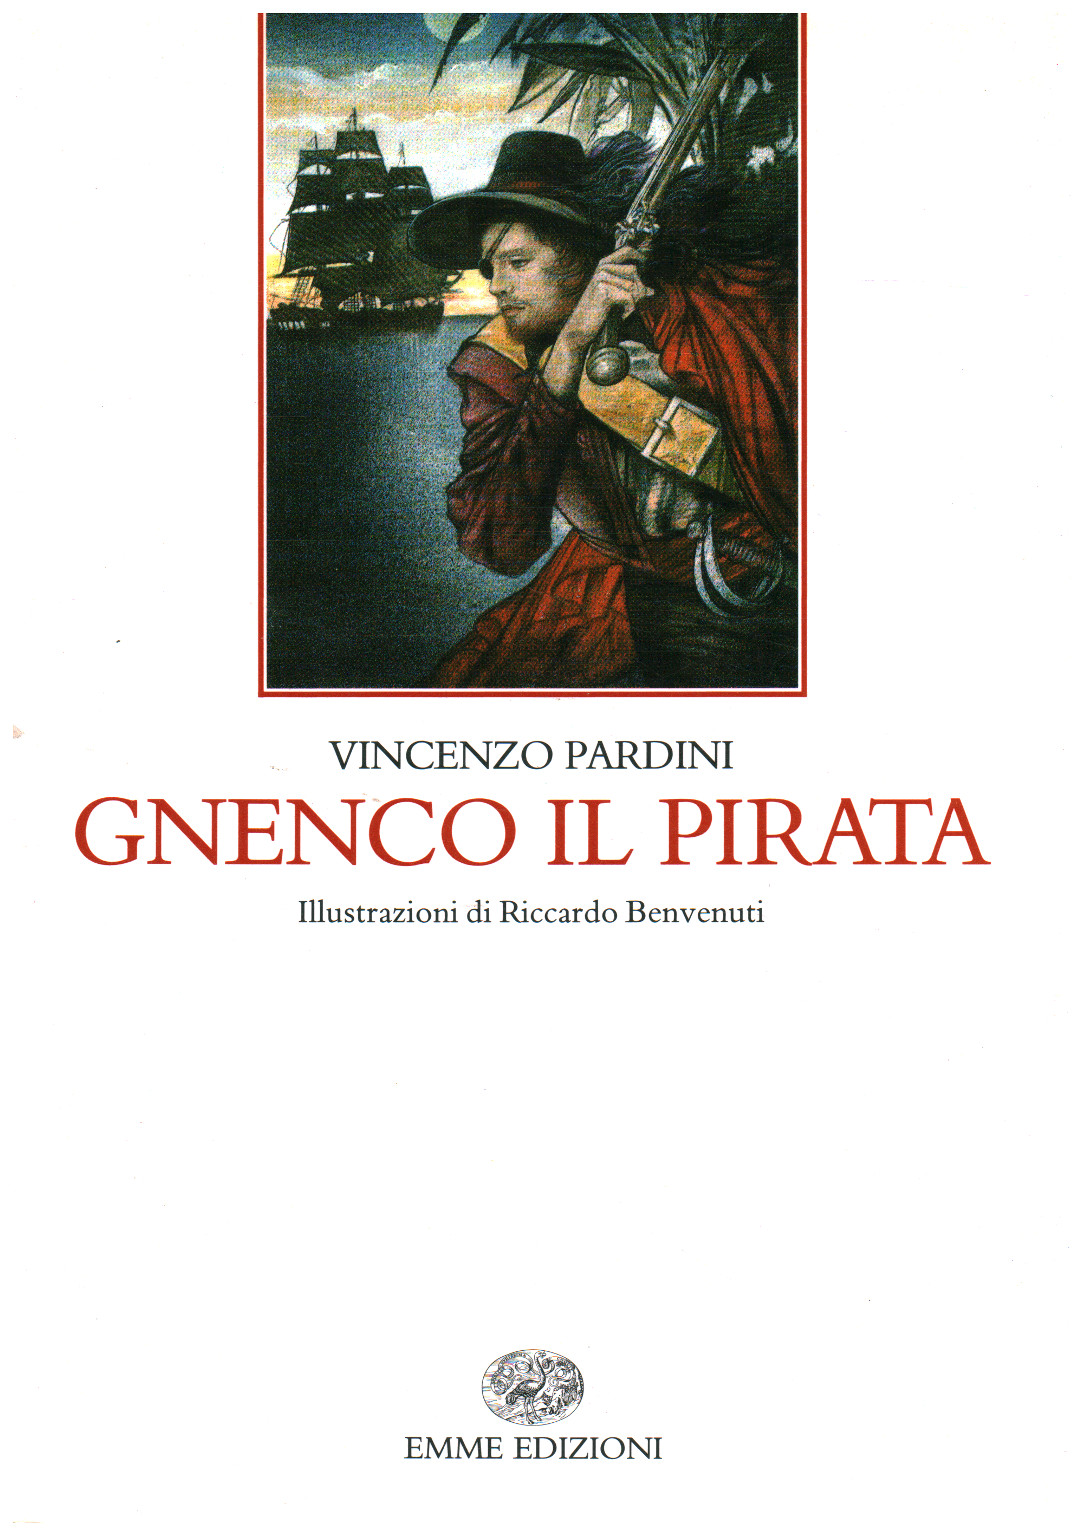 Gnenco le pirate, Vincenzo Pardini